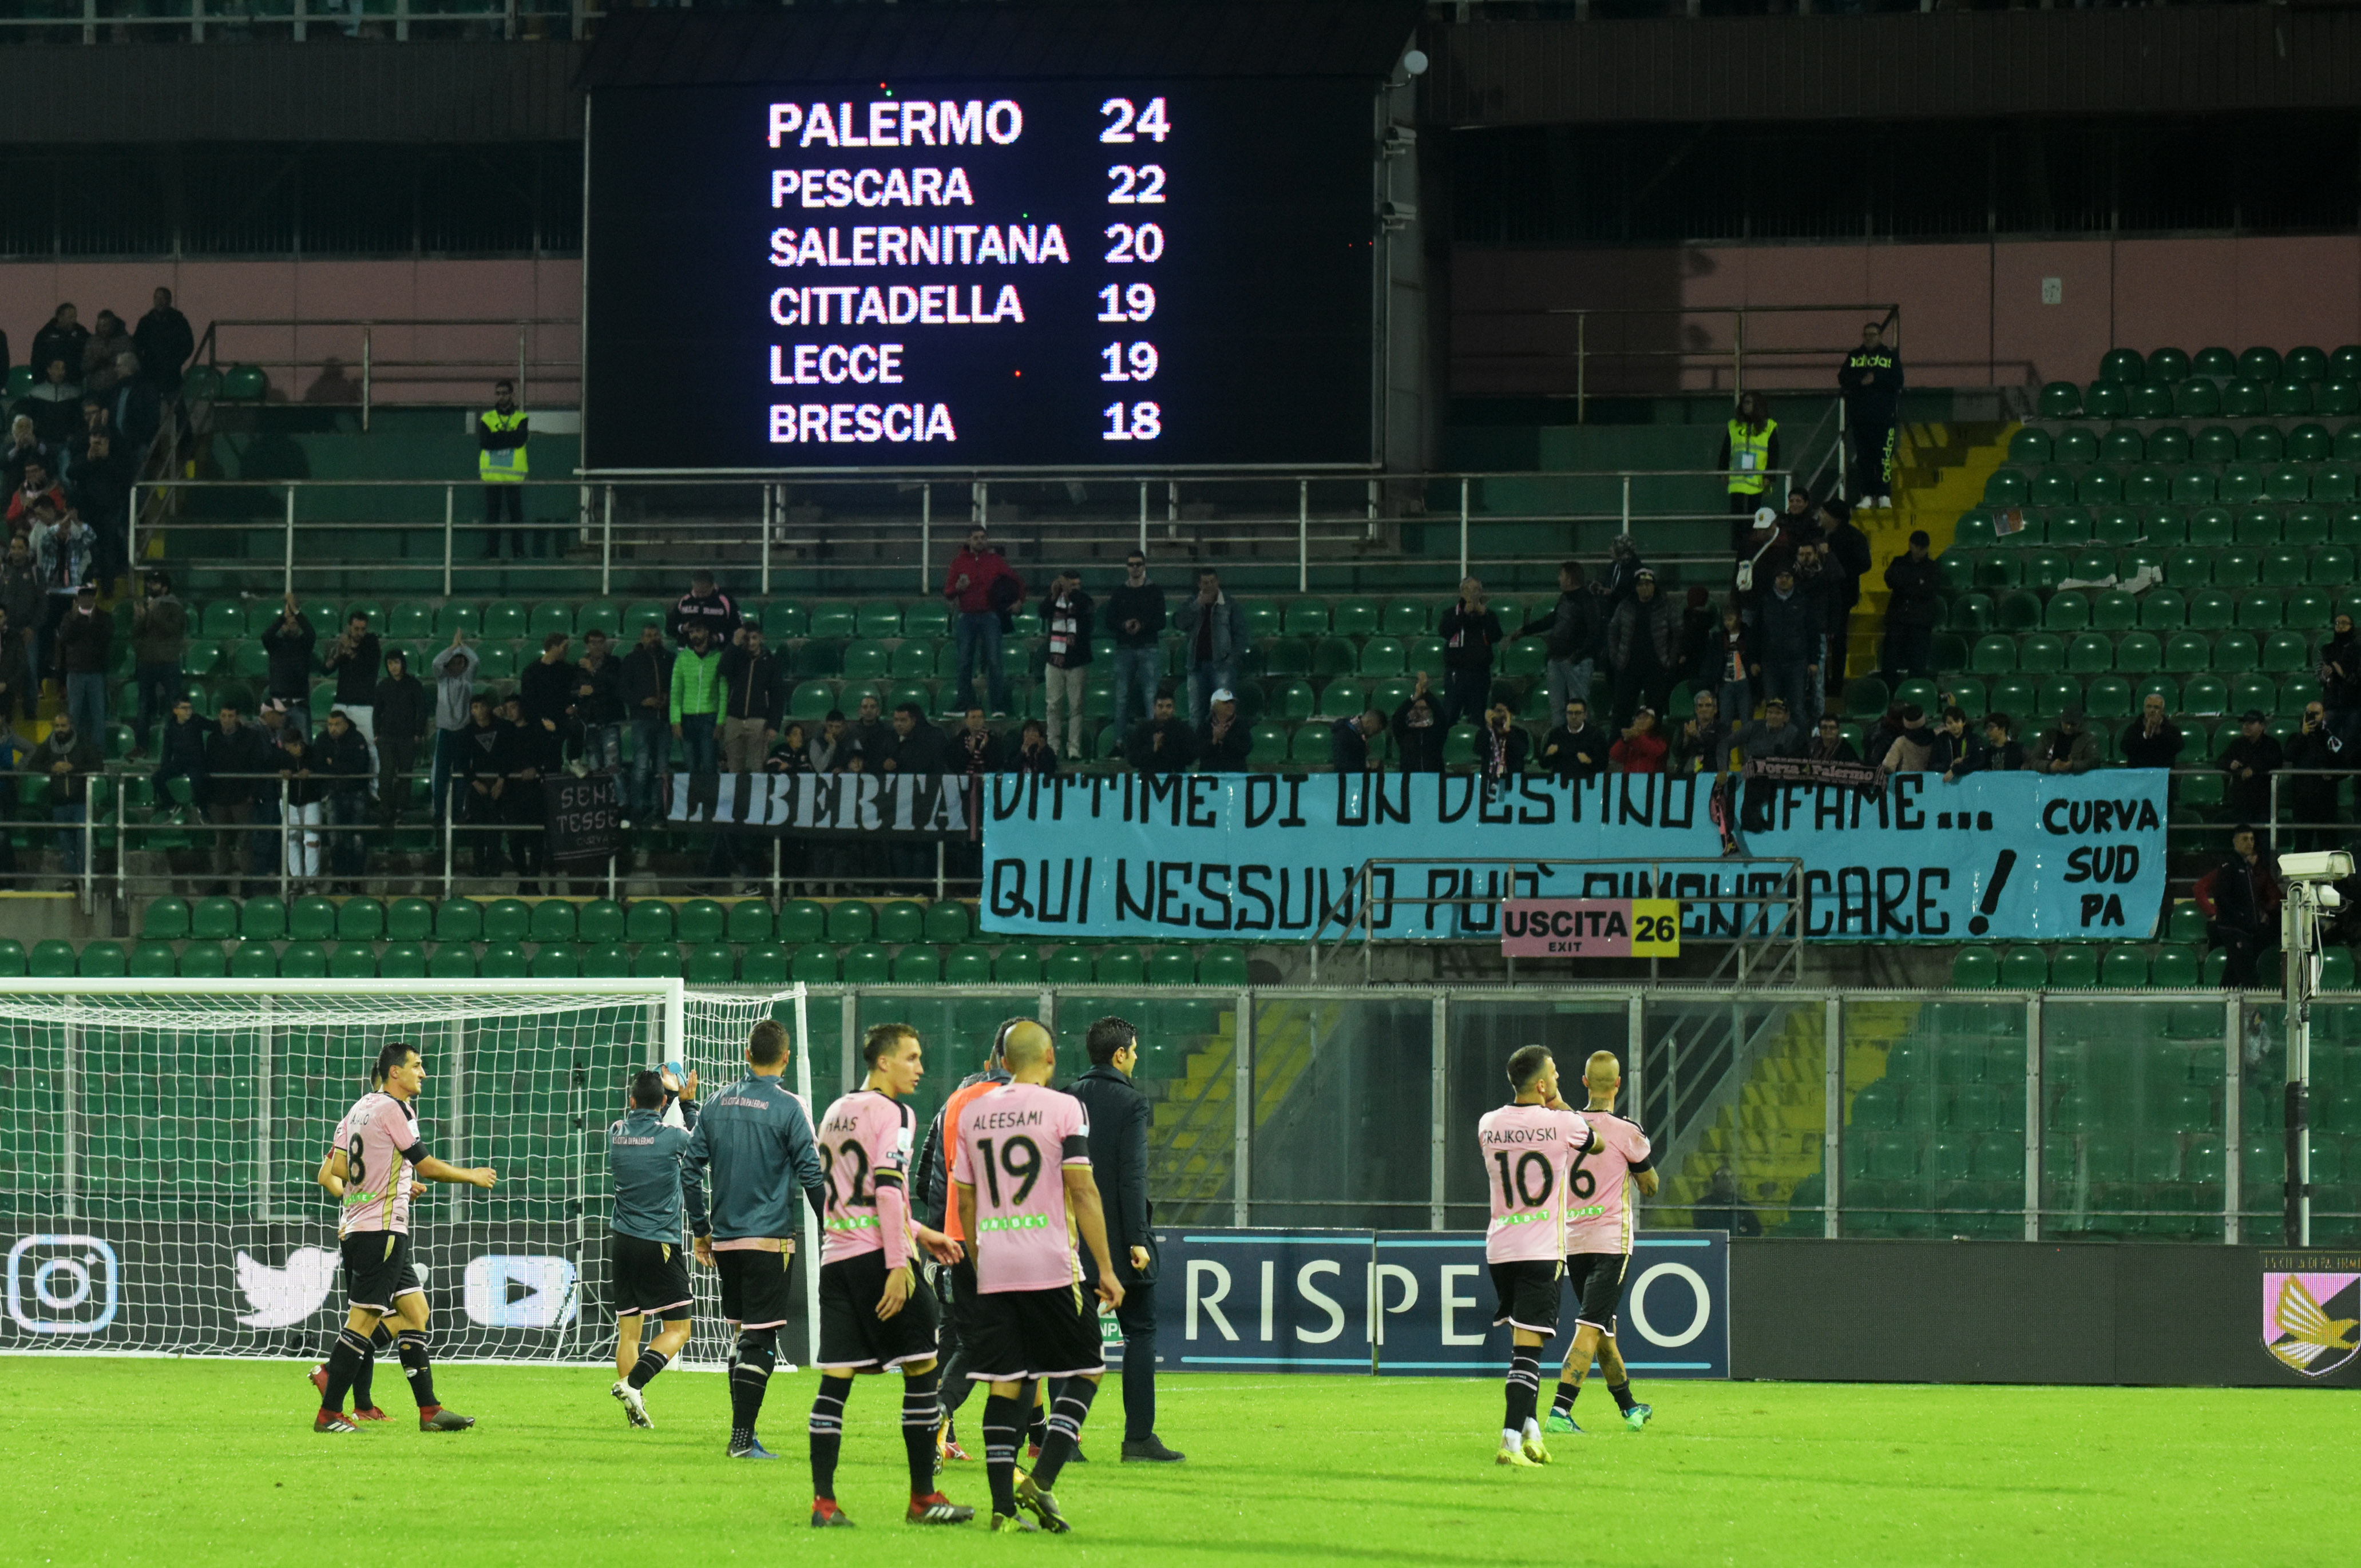 Il primo Palermo e la prima maglia che non era rossoblu come si pensa -  TifosiPalermo